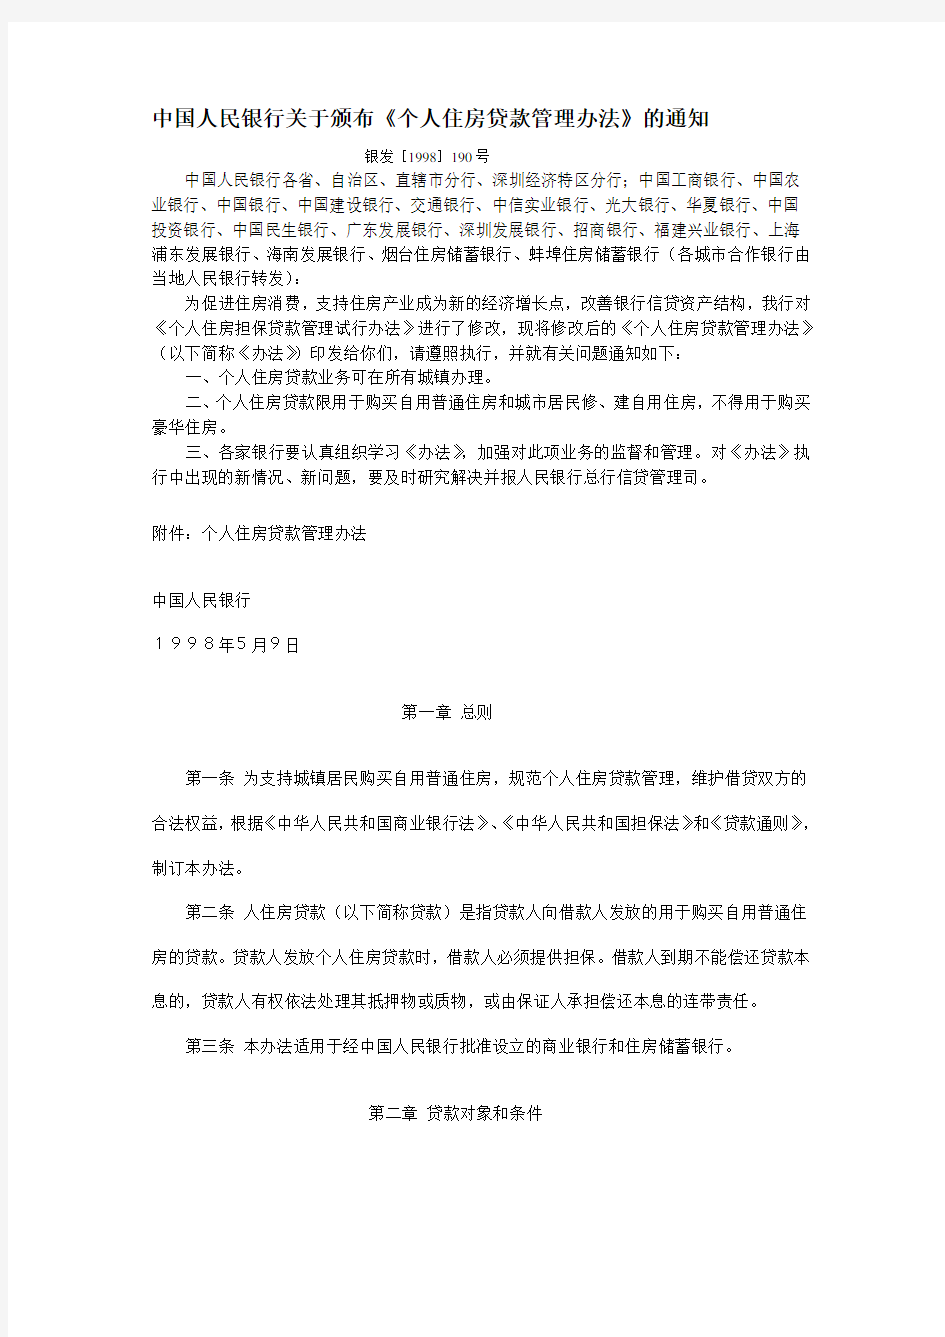 中国人民银行关于颁布《个人住房贷款管理办法》的通知